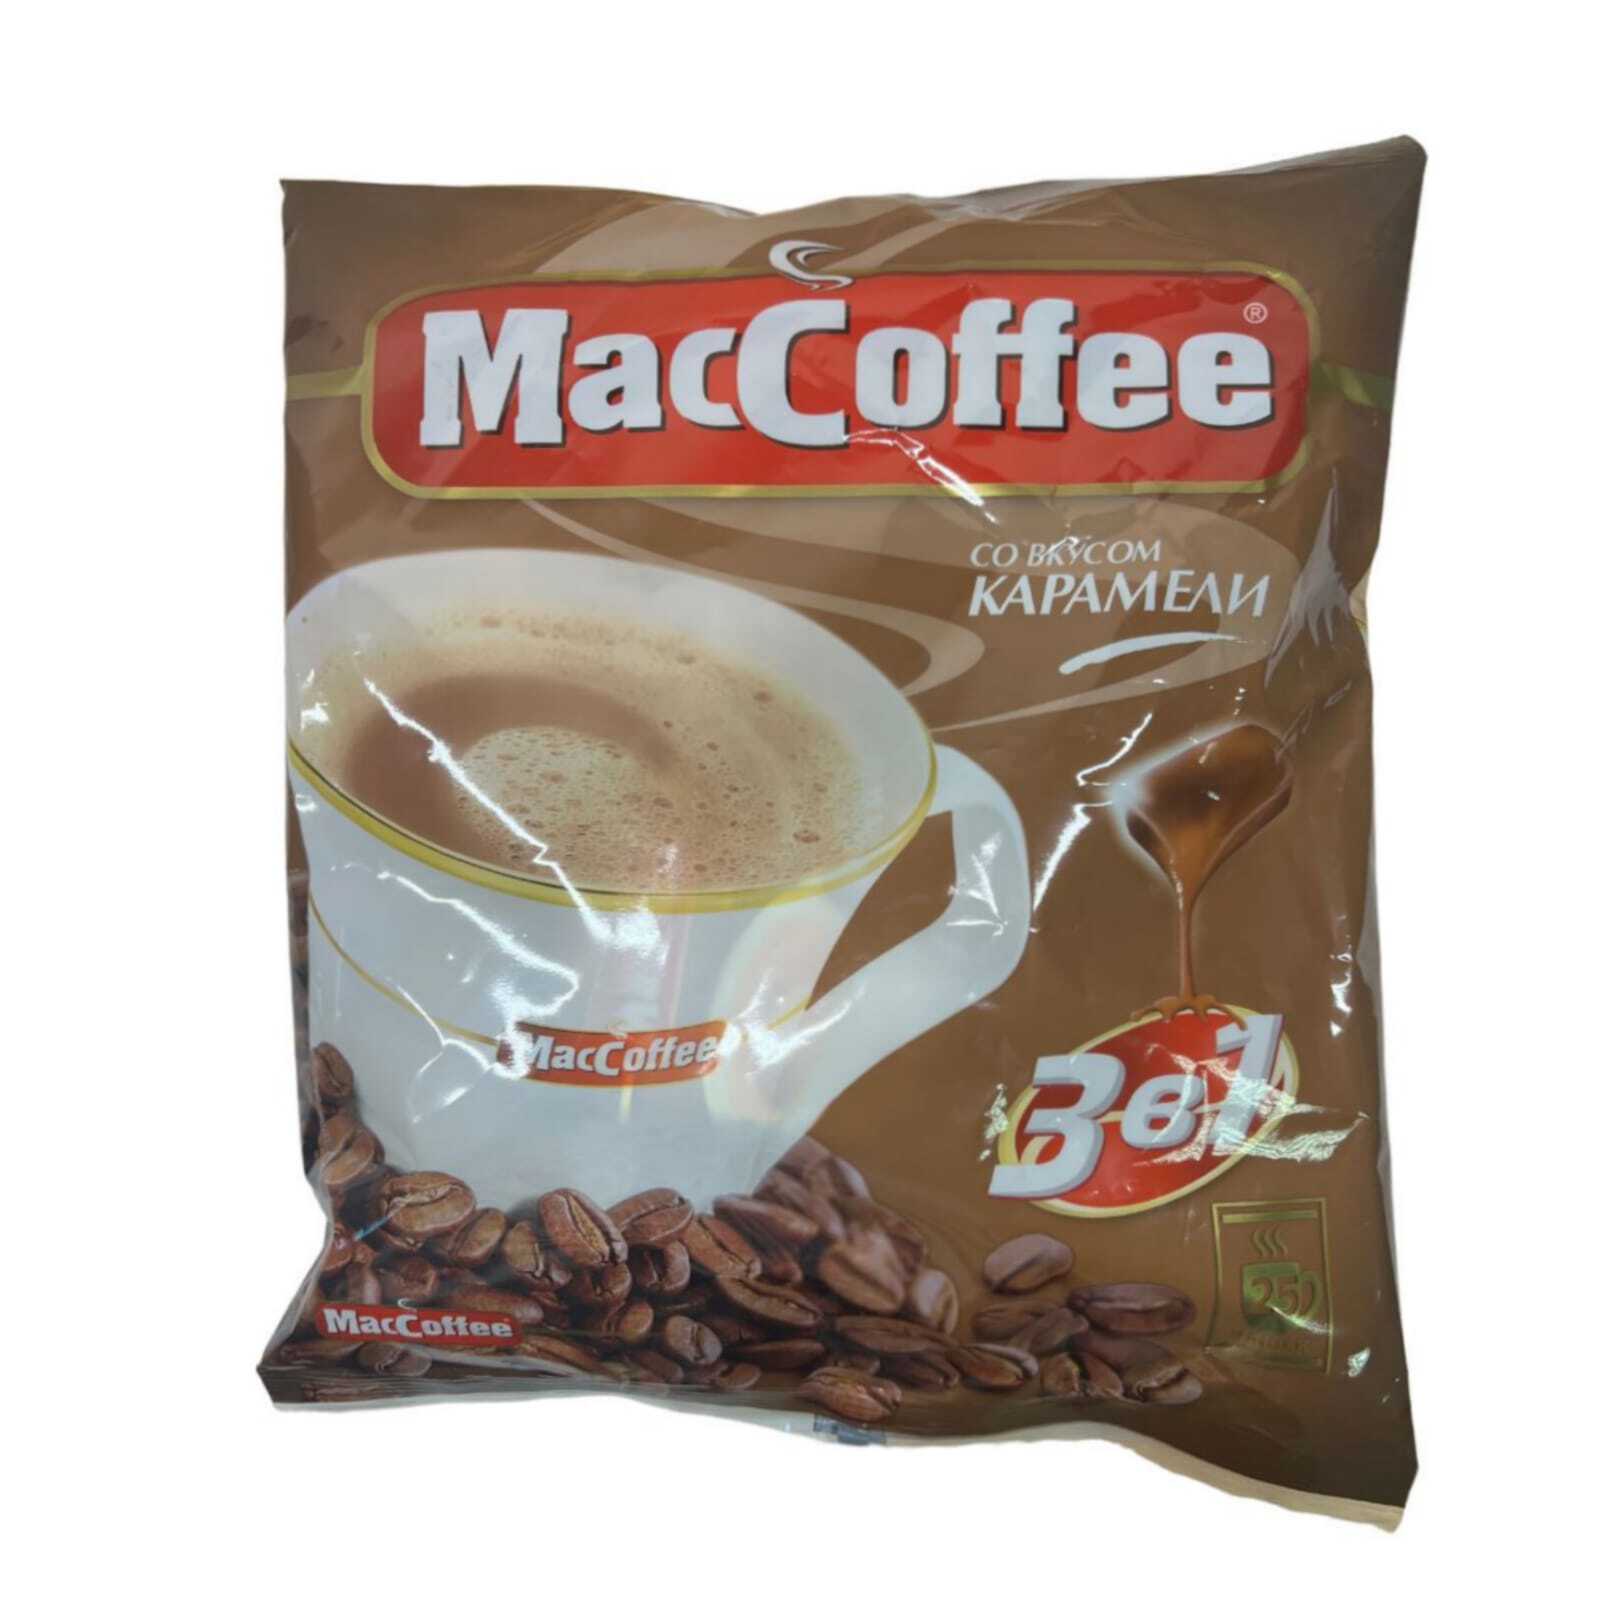 Маккофе отзывы. Маккофе 3 в 1. Кофе растворимый Маккофе. MACCOFFEE карамель (3в1) кофейный напиток 18г*25*20. Кофе 3 в 1 Маккофе.